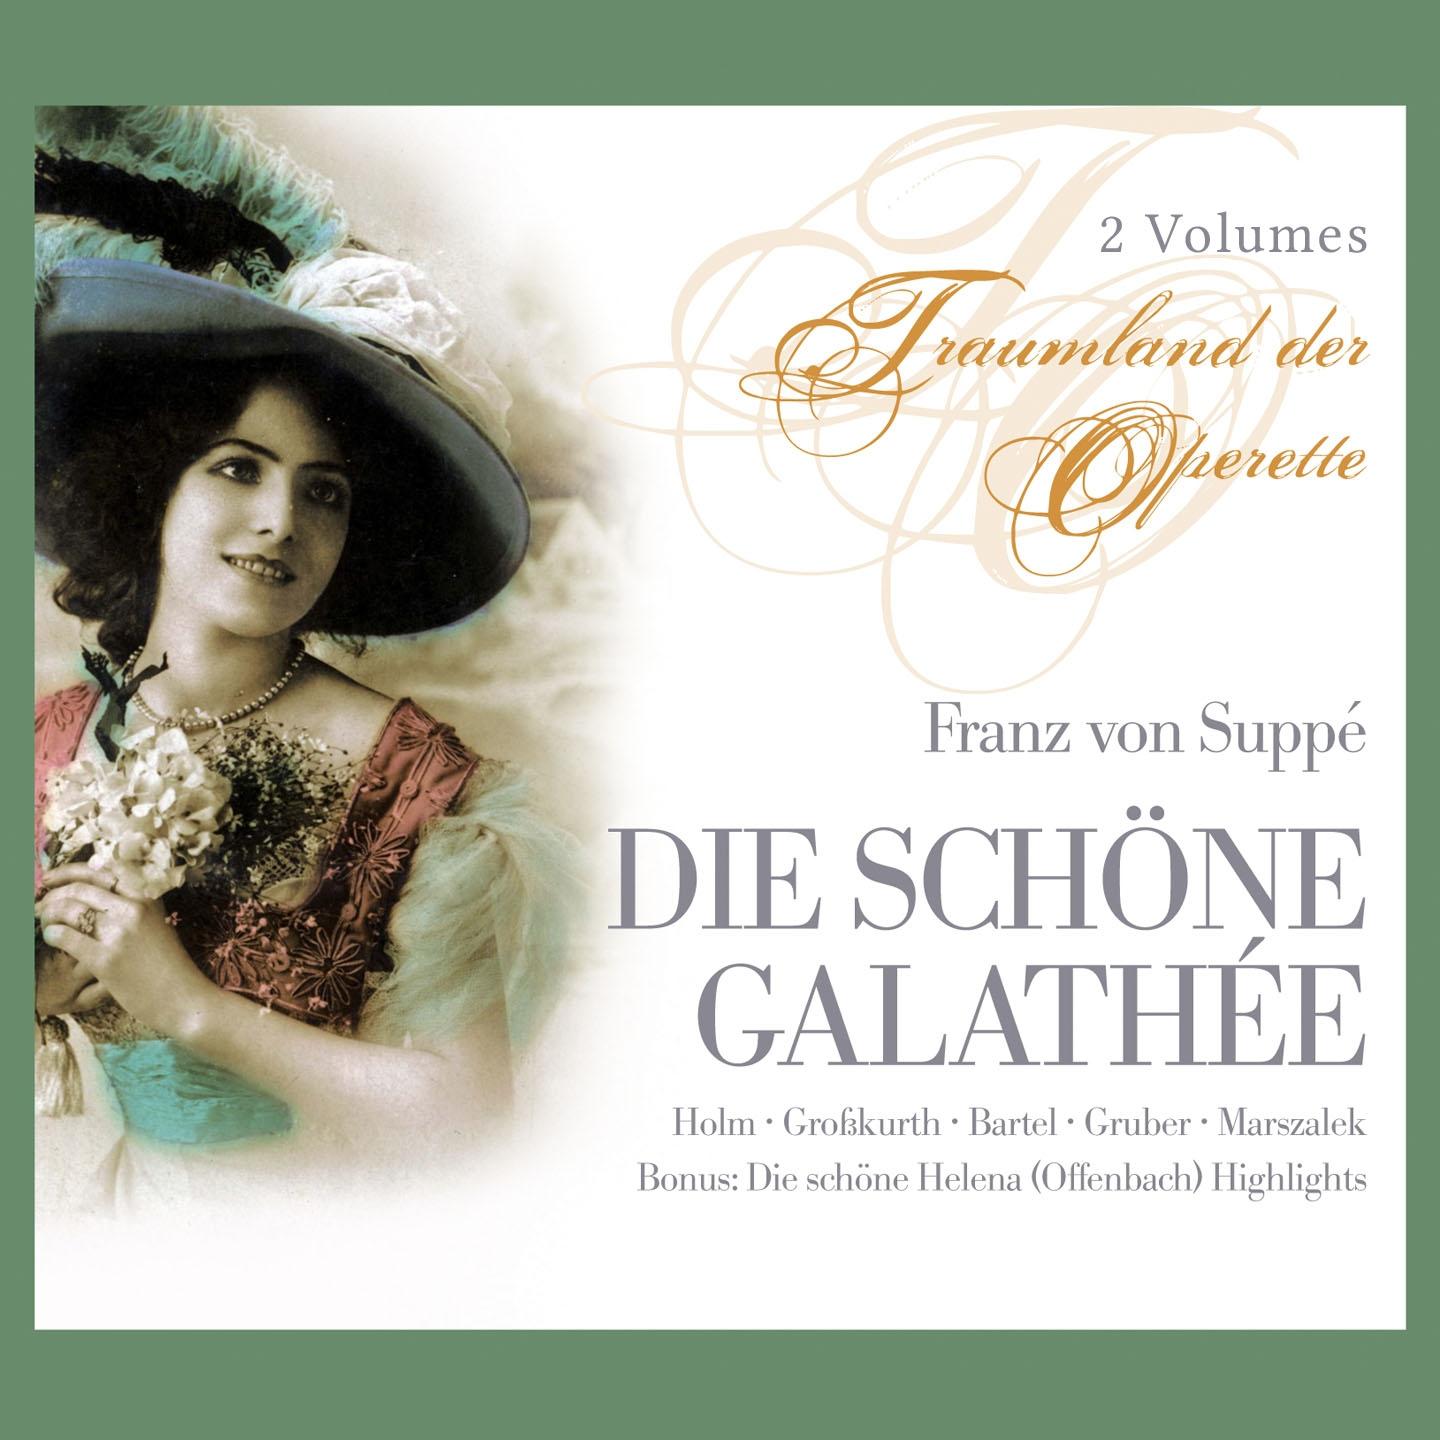 Die Schöne Galathée: "Dialog und Melodram"